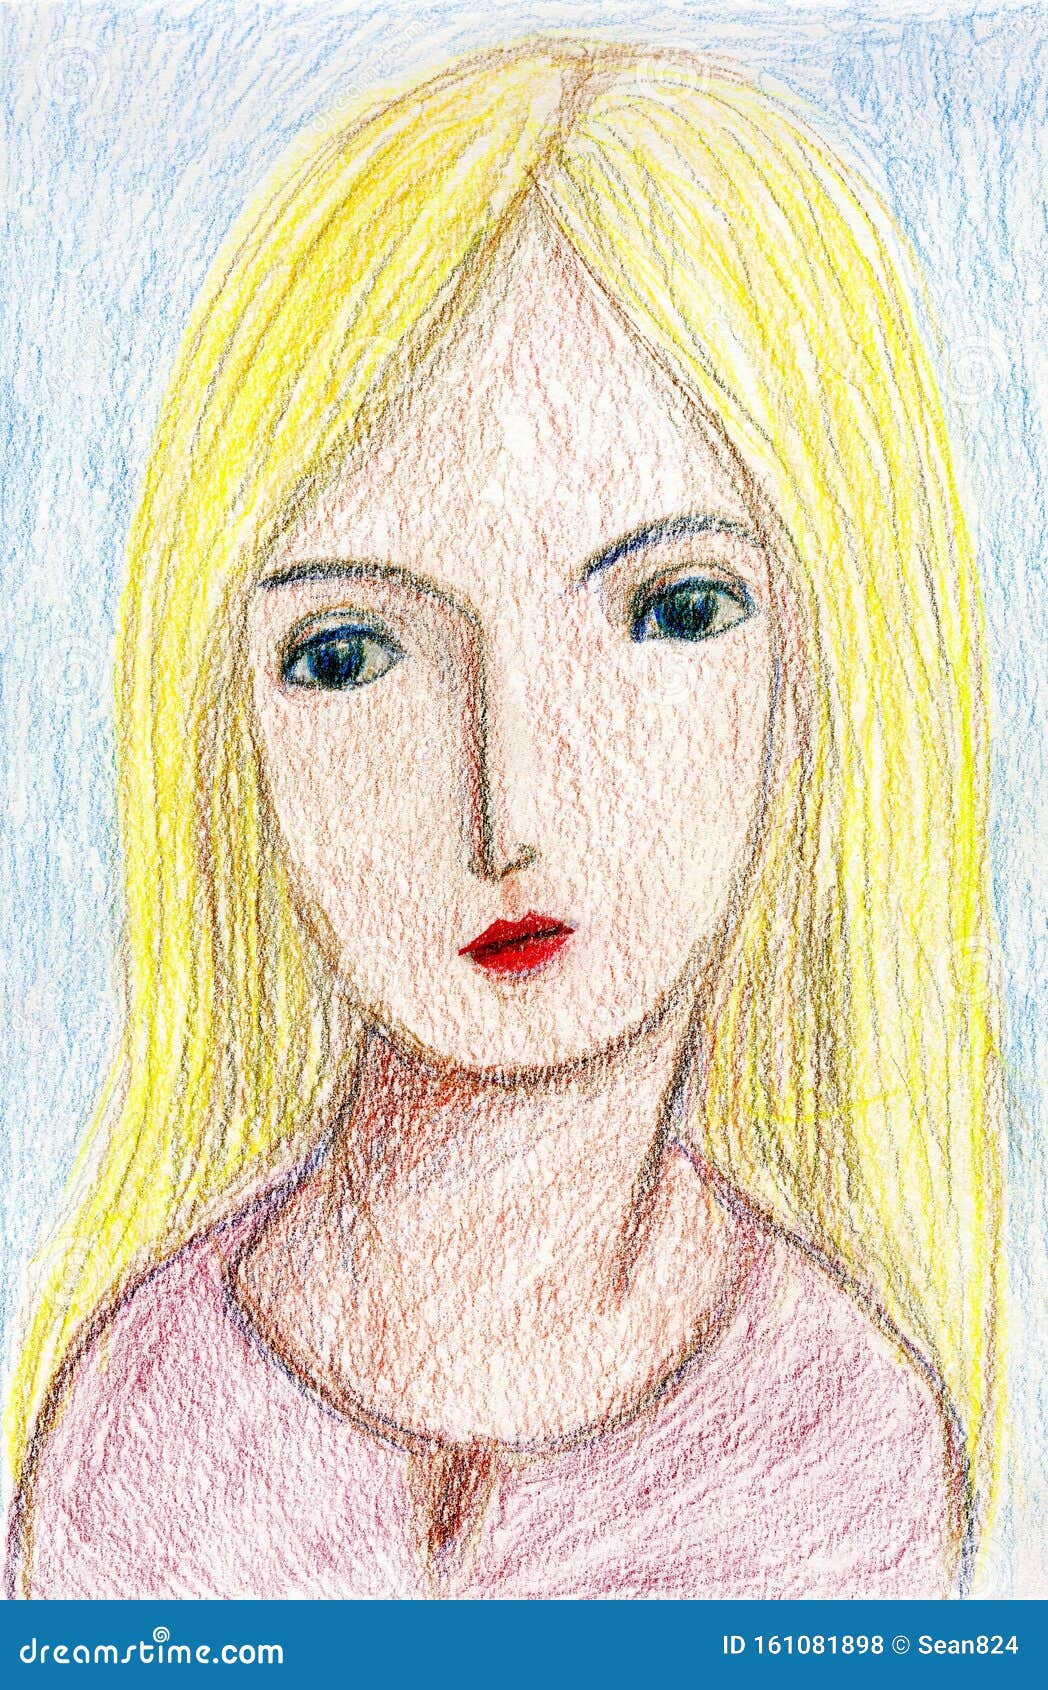 Blonde hair girl stock illustration. Illustration of teenager - 161081898